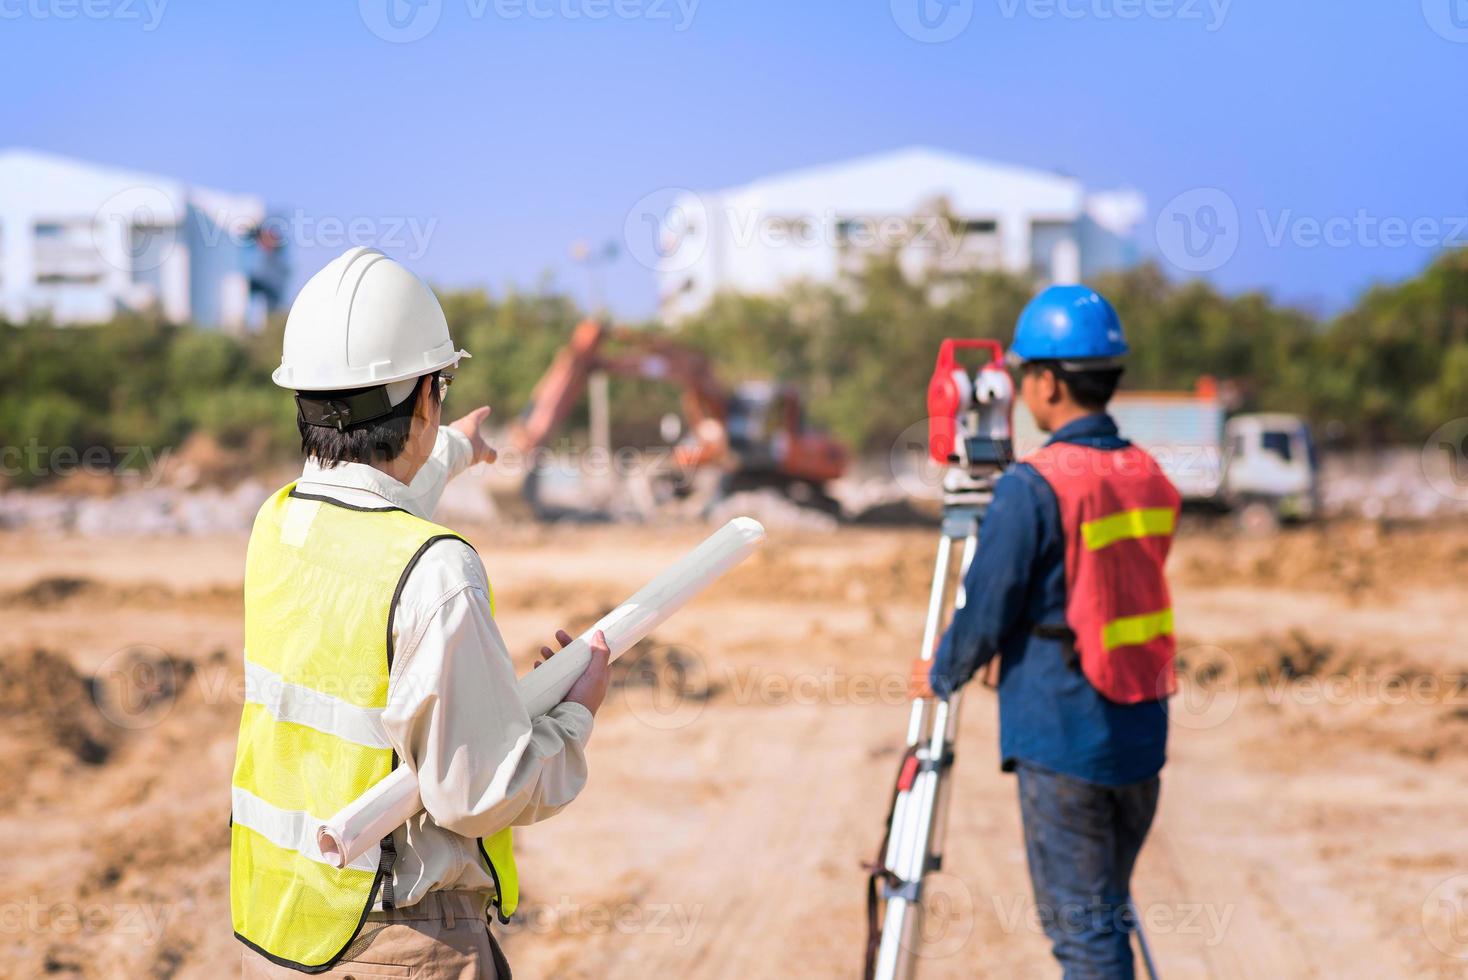 ingegnere edile con caporeparto che controlla il cantiere per il nuovo progetto di costruzione di infrastrutture. concetto di foto per lavori di ingegneria.